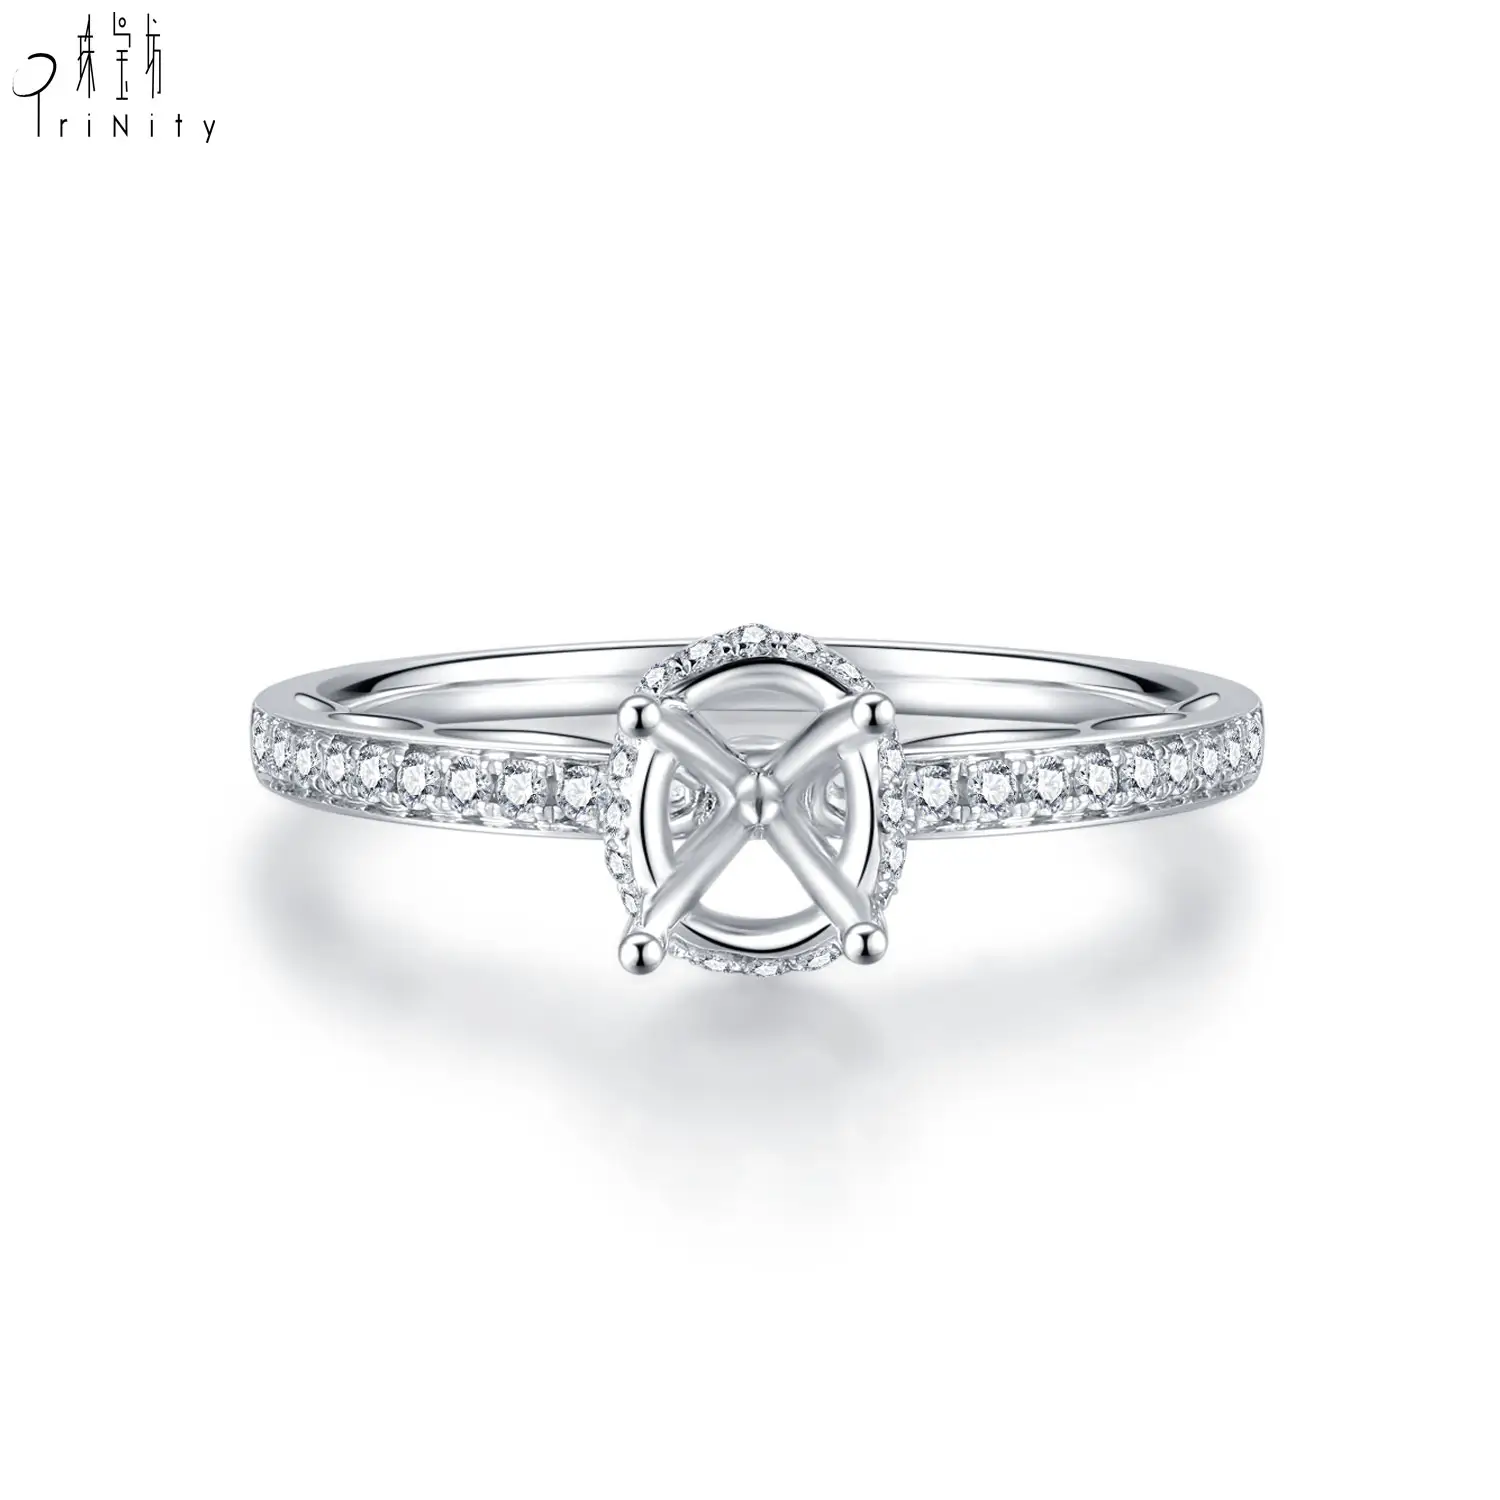 Anel de noivado de casamento em ouro branco 18K com diamante solitário sem pedra central, novo produto com design personalizado